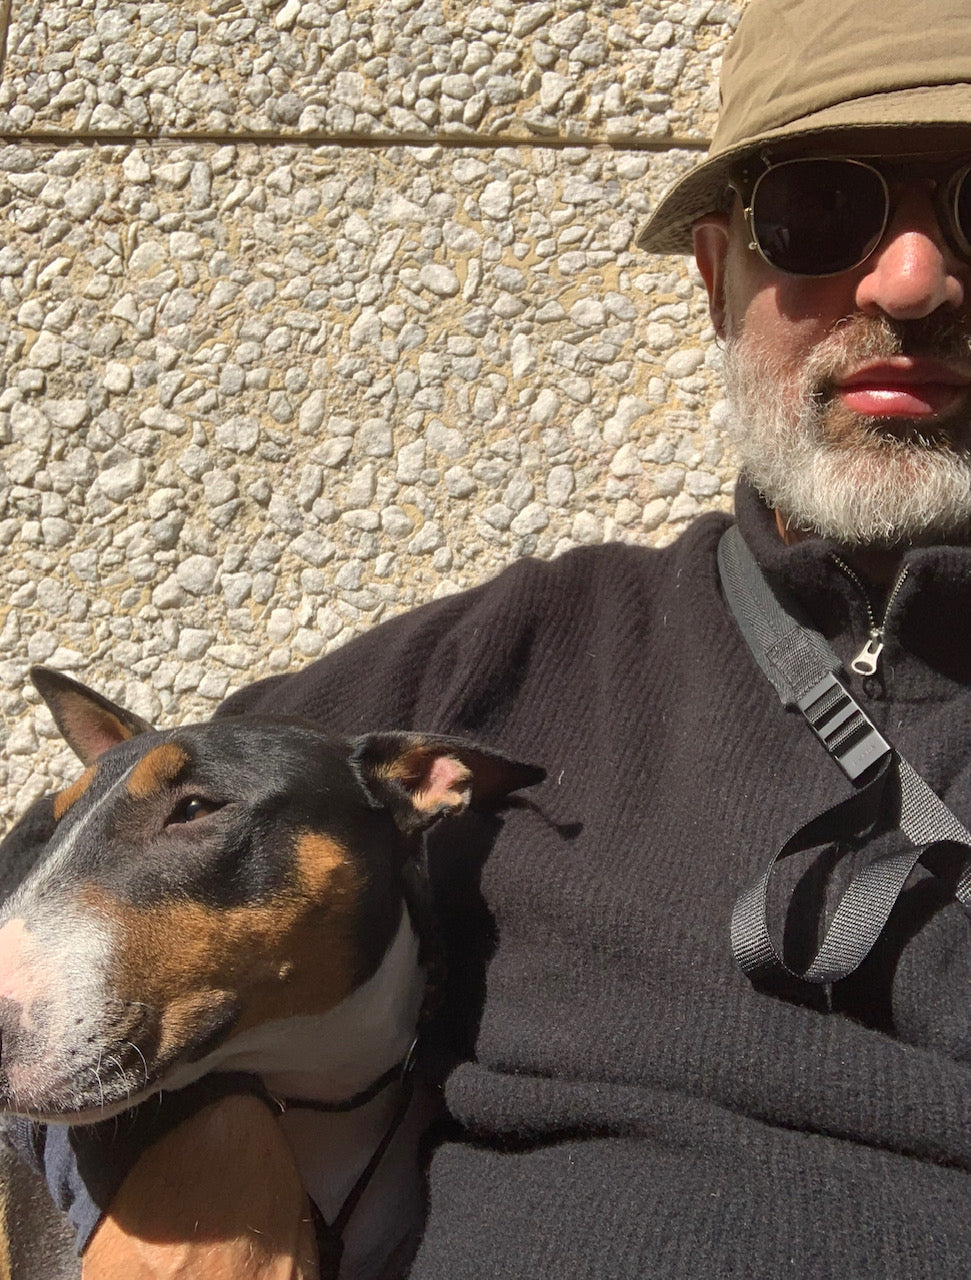 Sasa Antic sitter med sin hund Novak. Sasa har svarta solglasögon och grön hatt.